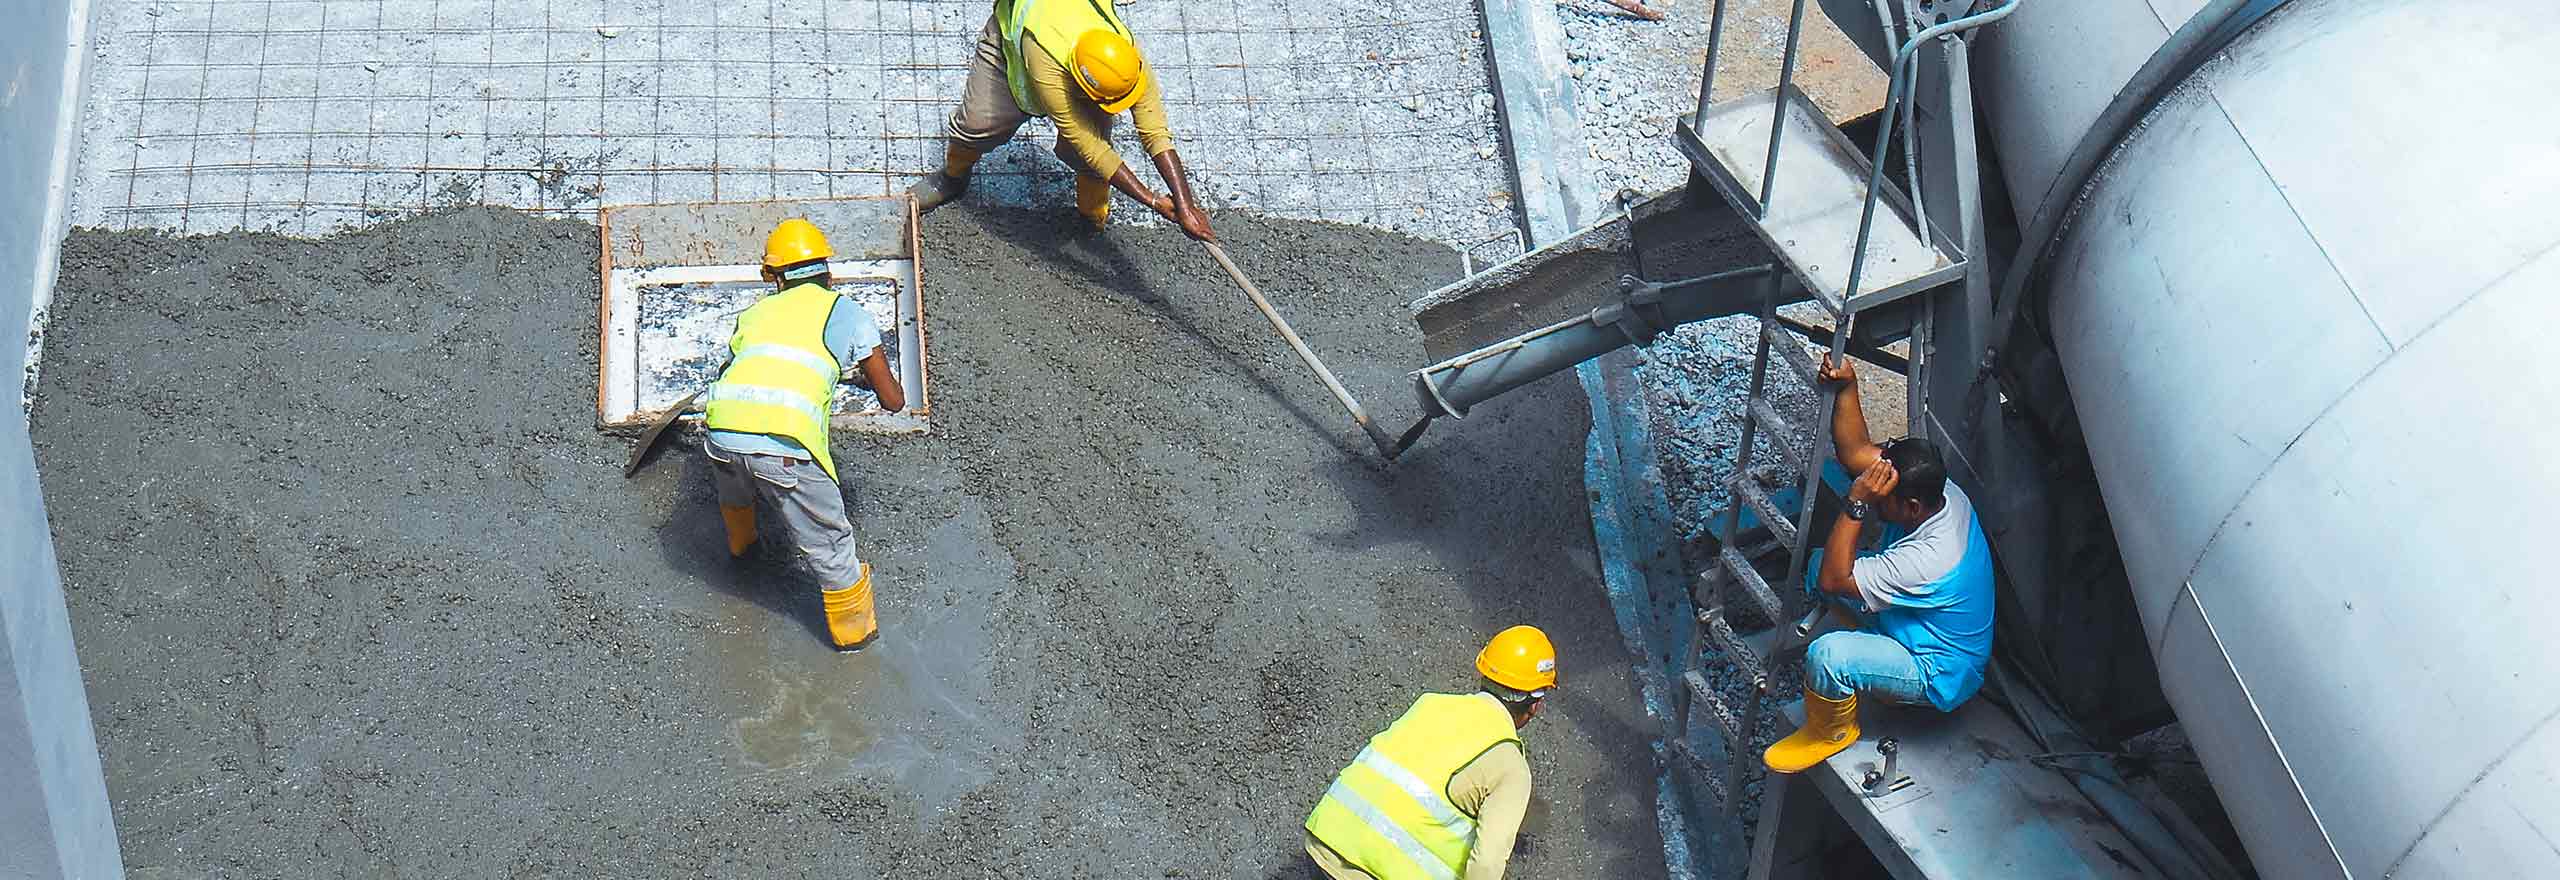 スラブ部分にコンクリートを流し込んで滑らかにするために、さまざまな機器を使用する建設作業員。